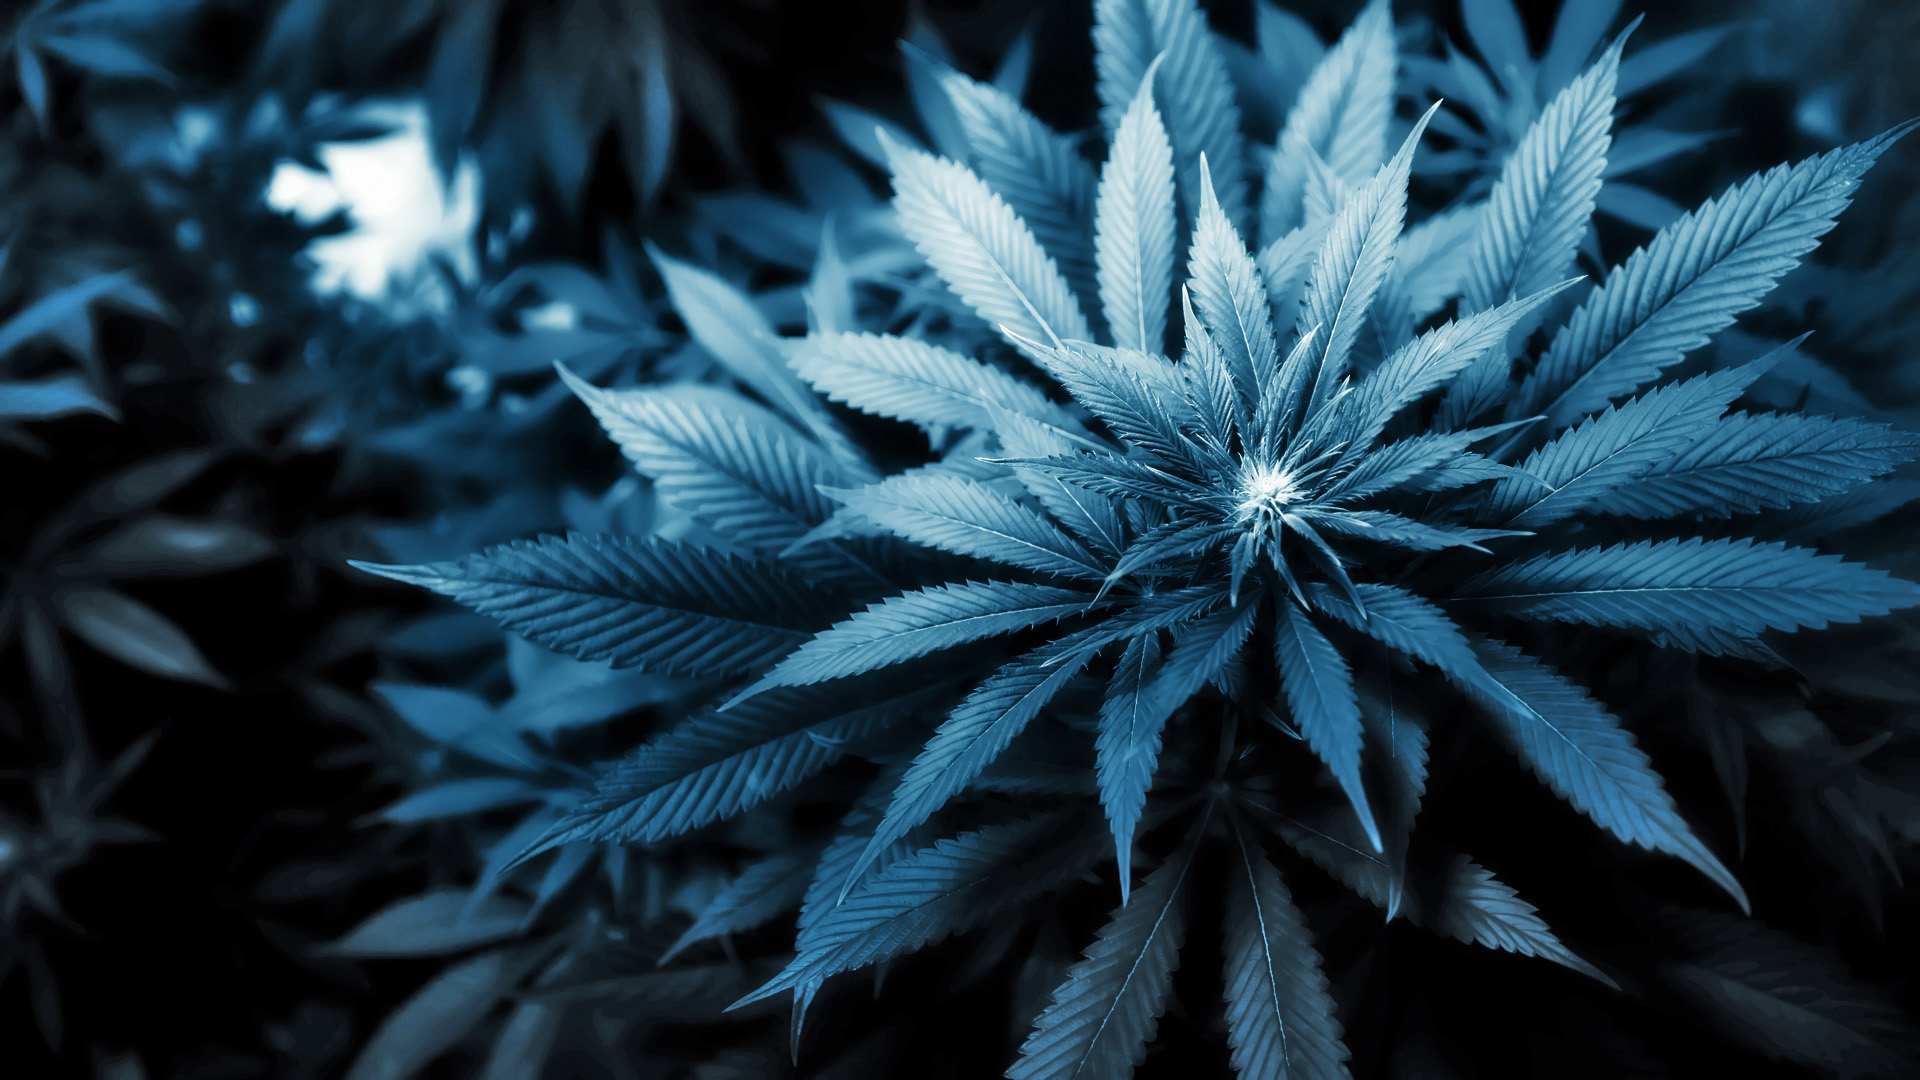  wallpaper weed marijuana cannabis leaf